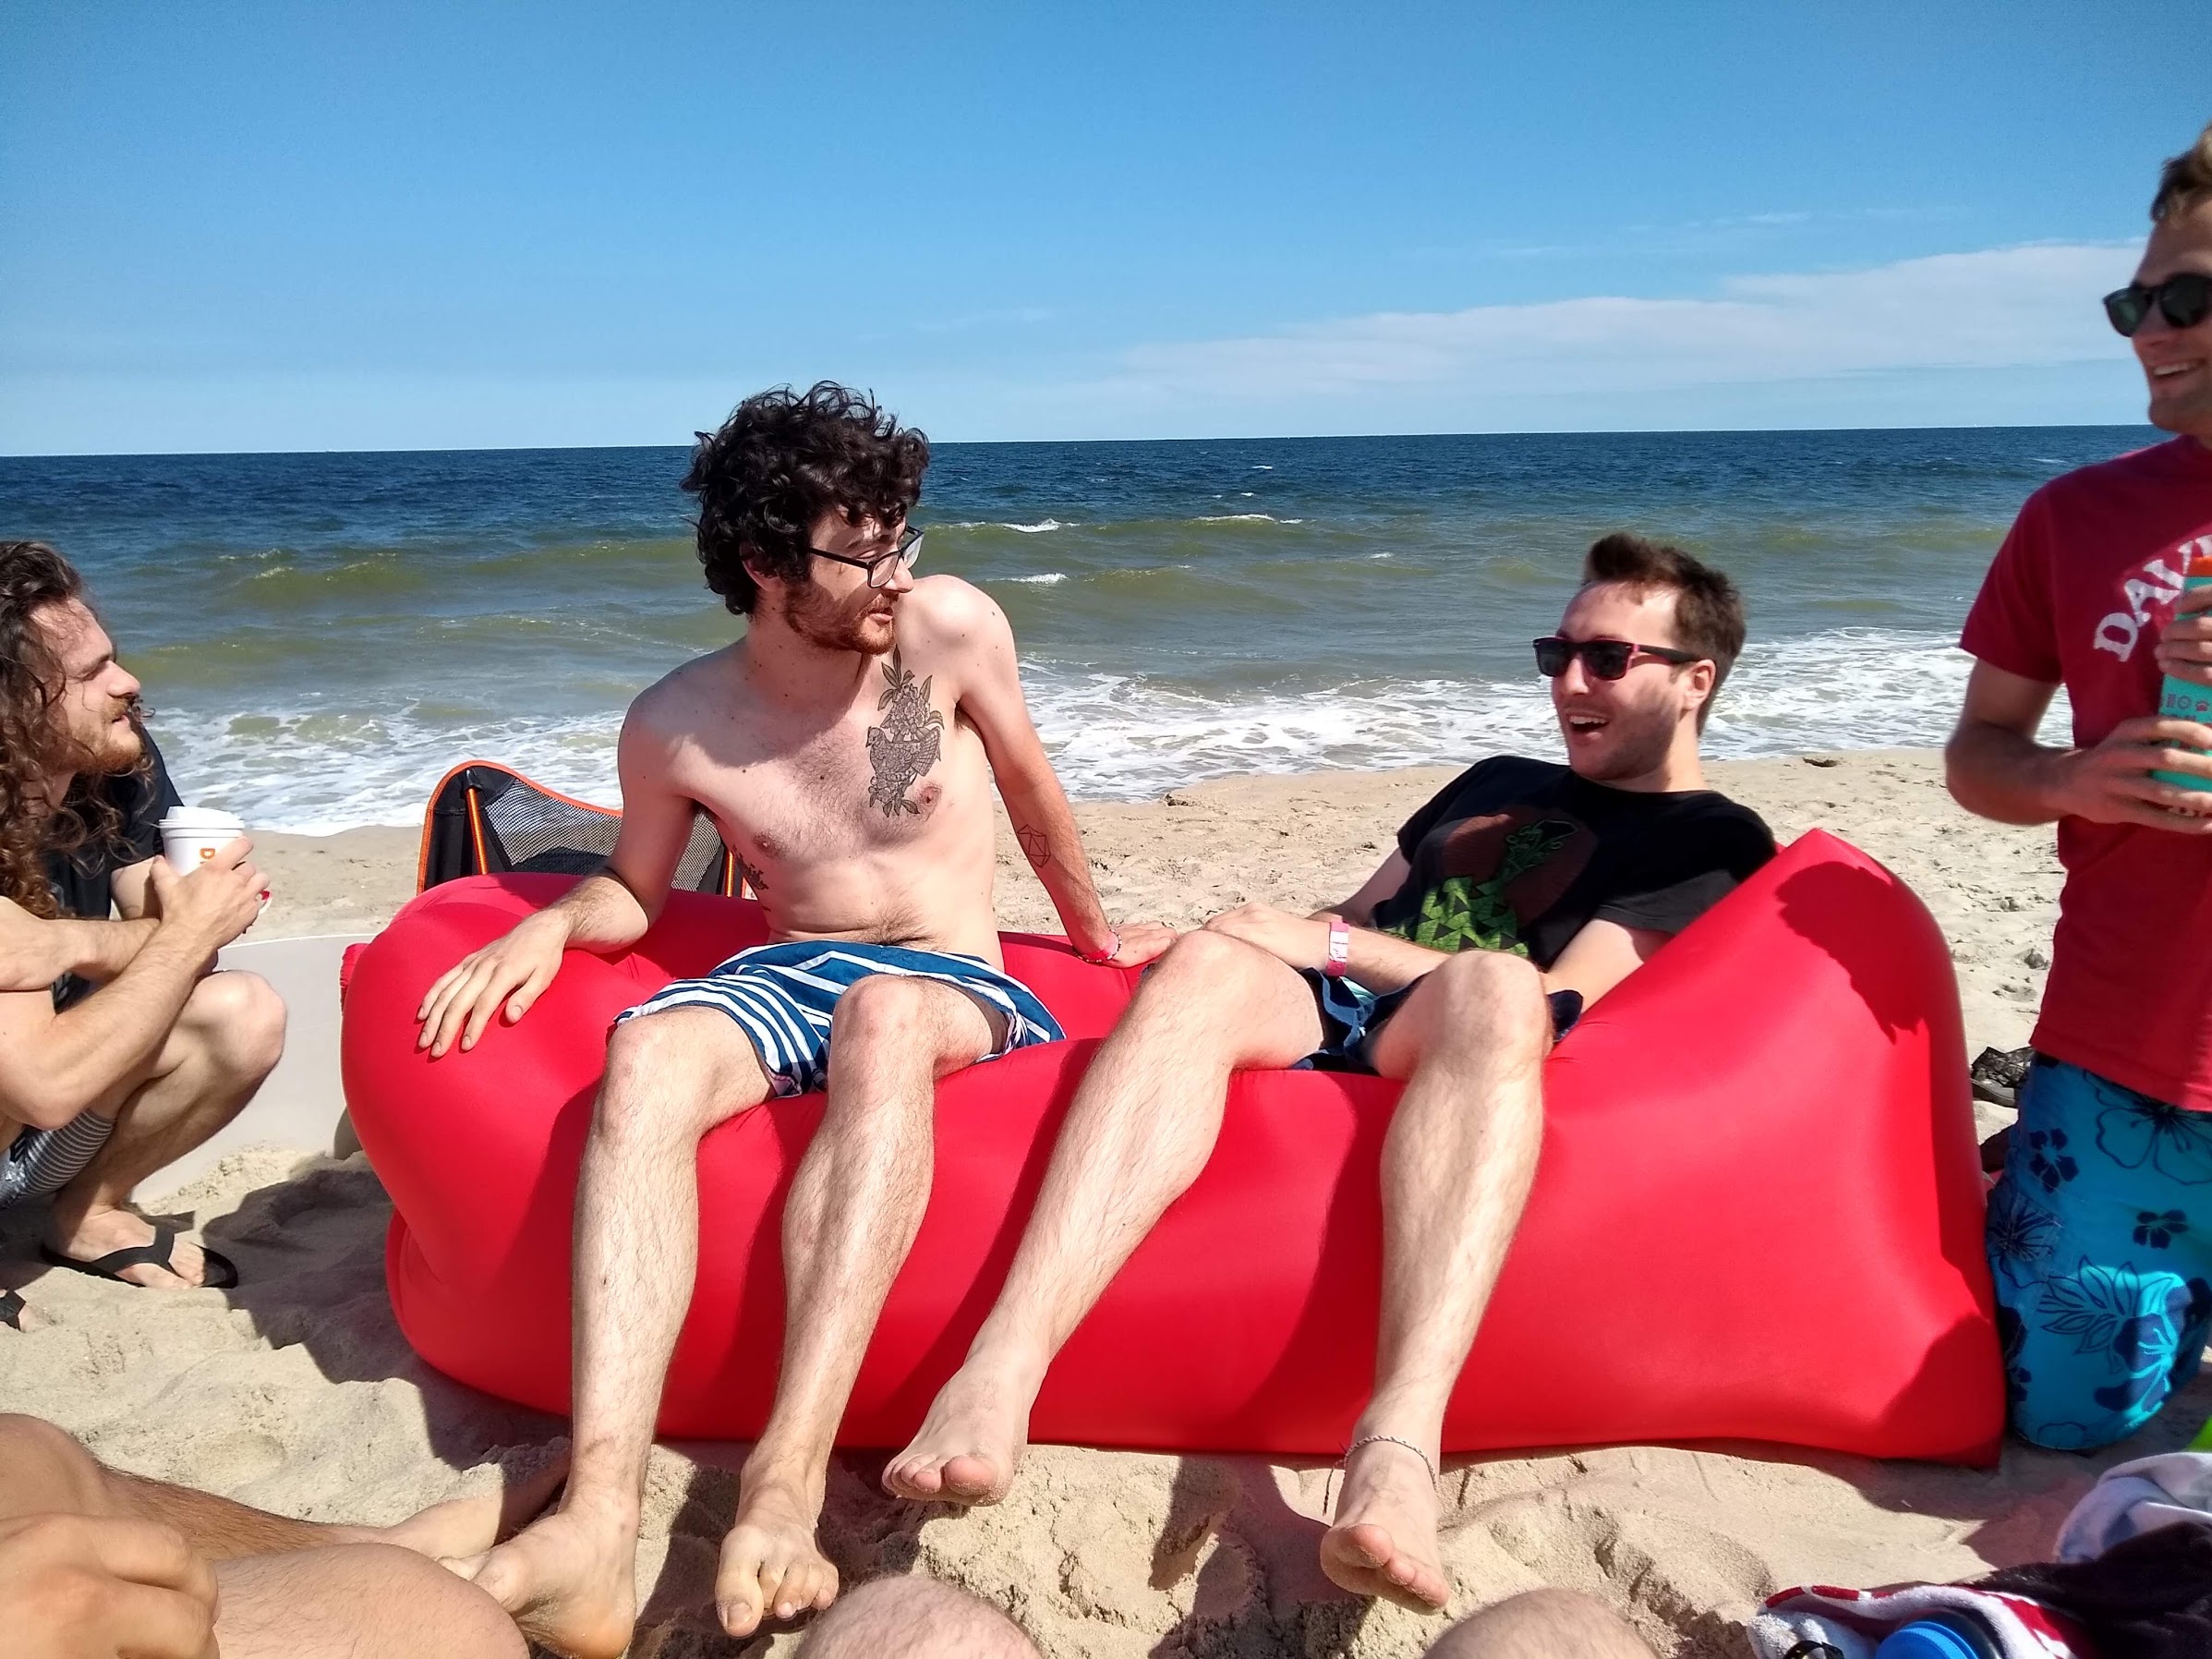 Boys on the Beach